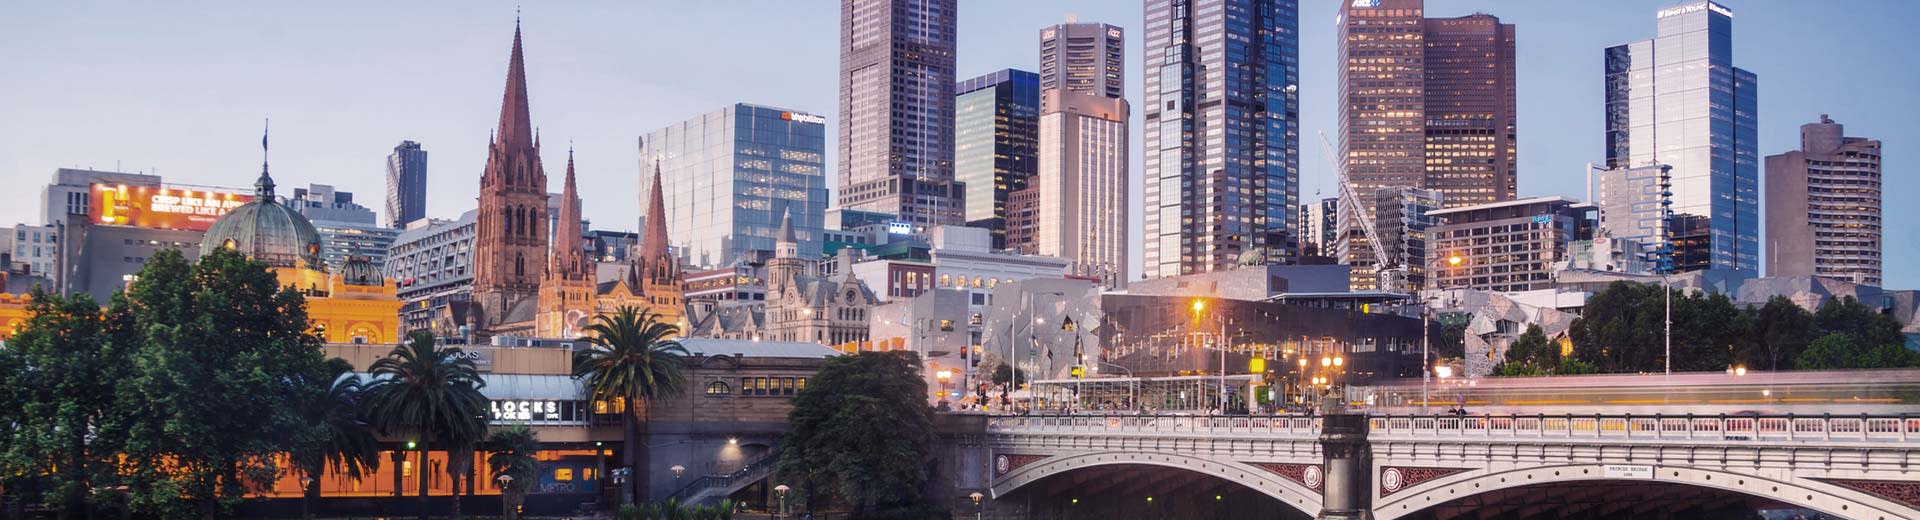 Gratte-ciel et ponts de Melbourne dans la demi-lumière du crépuscule.